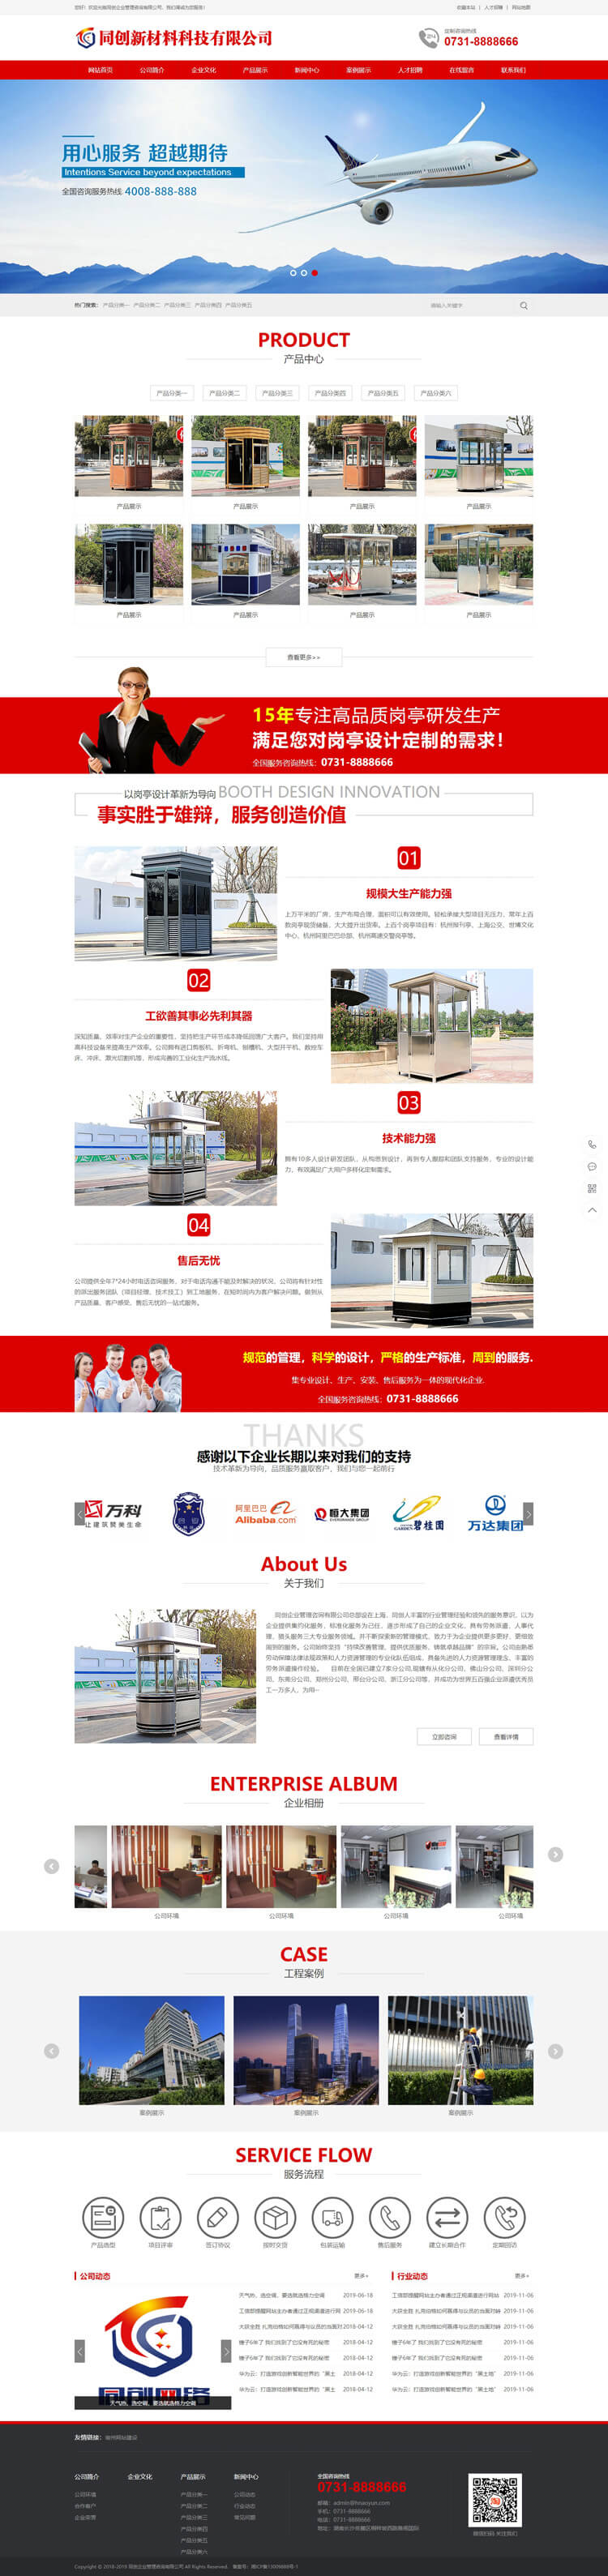 红色营销型企业网站源码程序-TC009-2